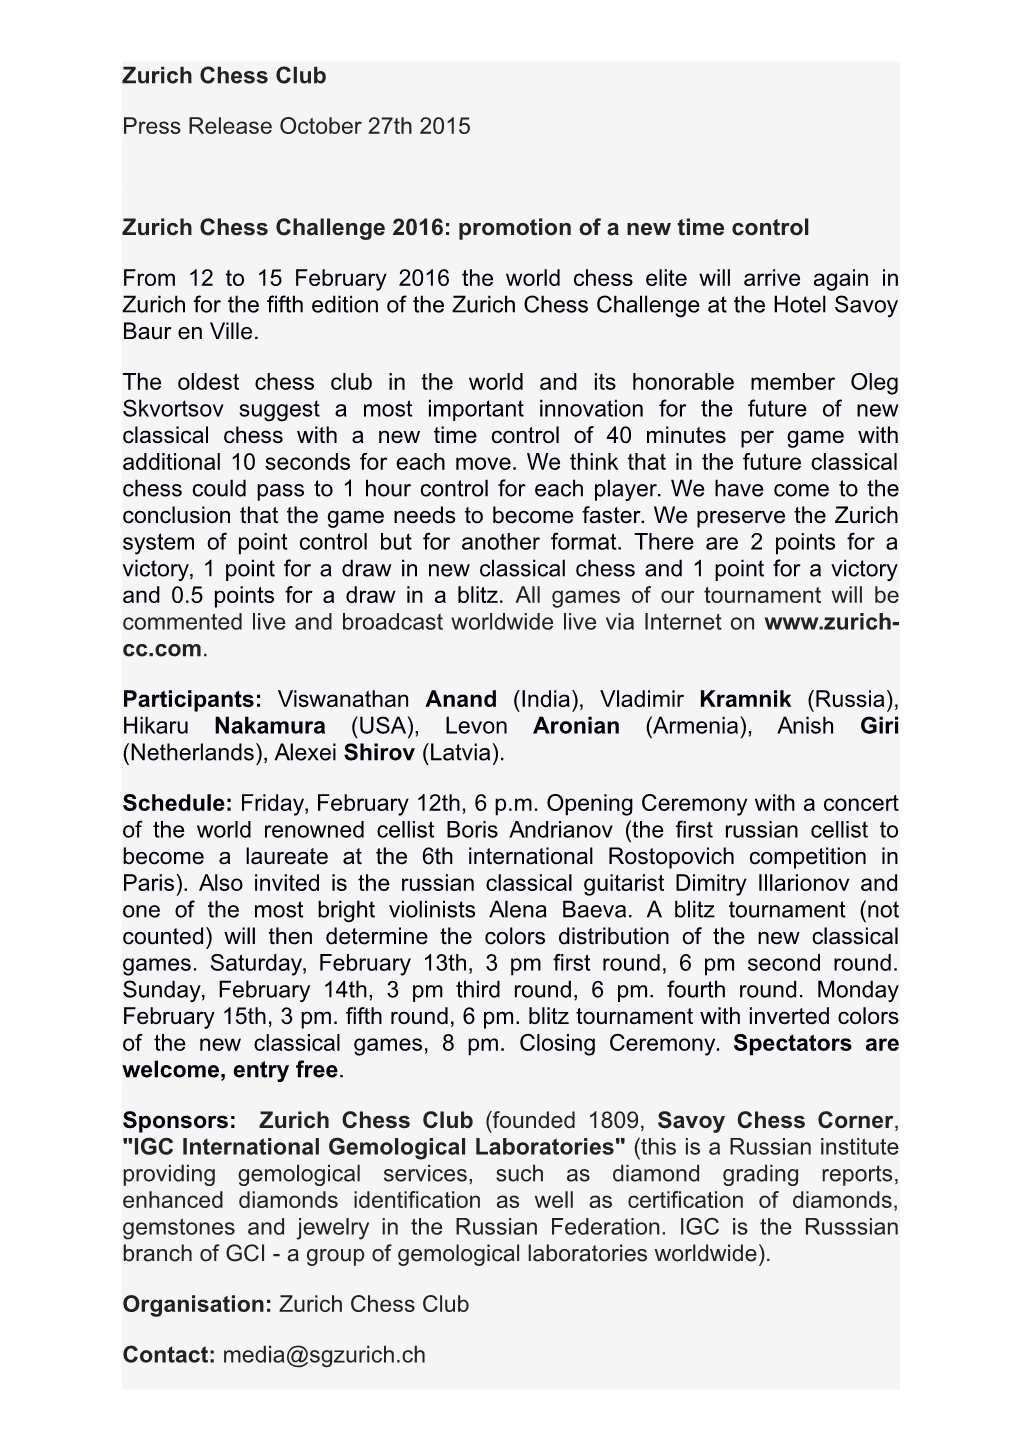 Zurich Chess Club Press Release October 27Th 2015 Zurich Chess